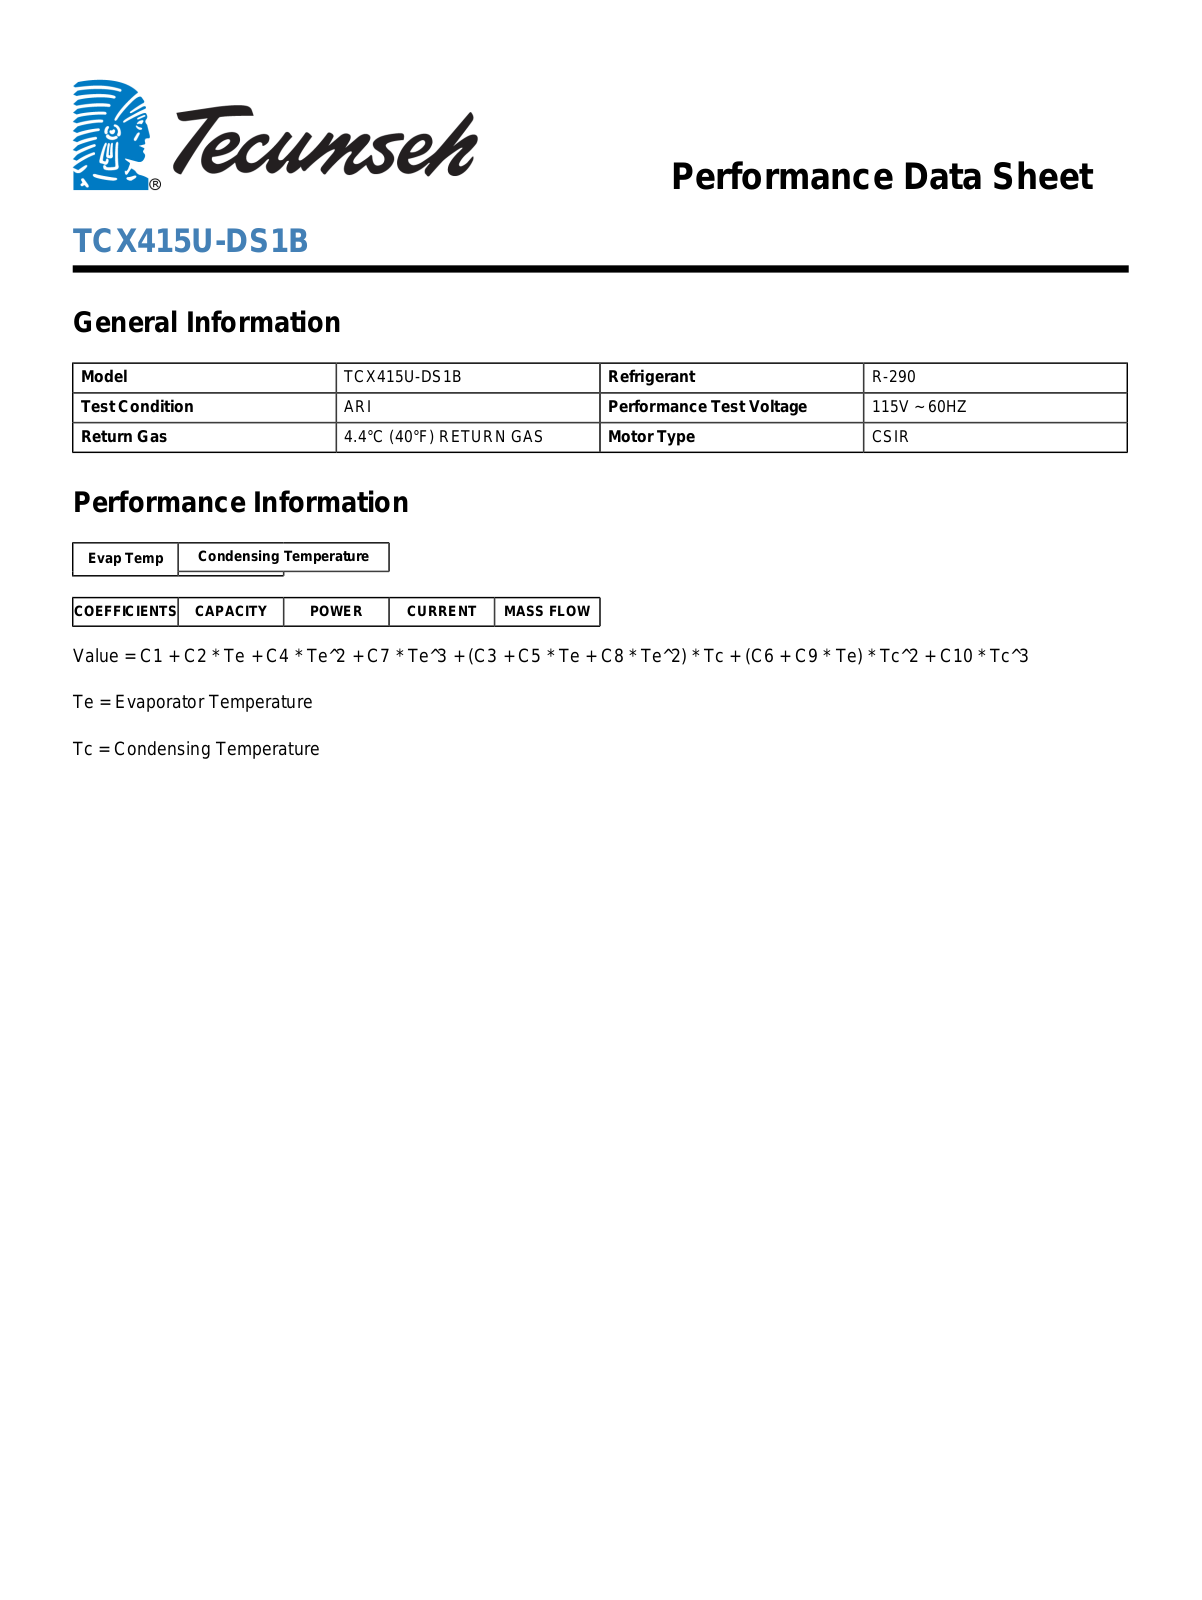 Tecumseh TCX415U-DS1B Manual